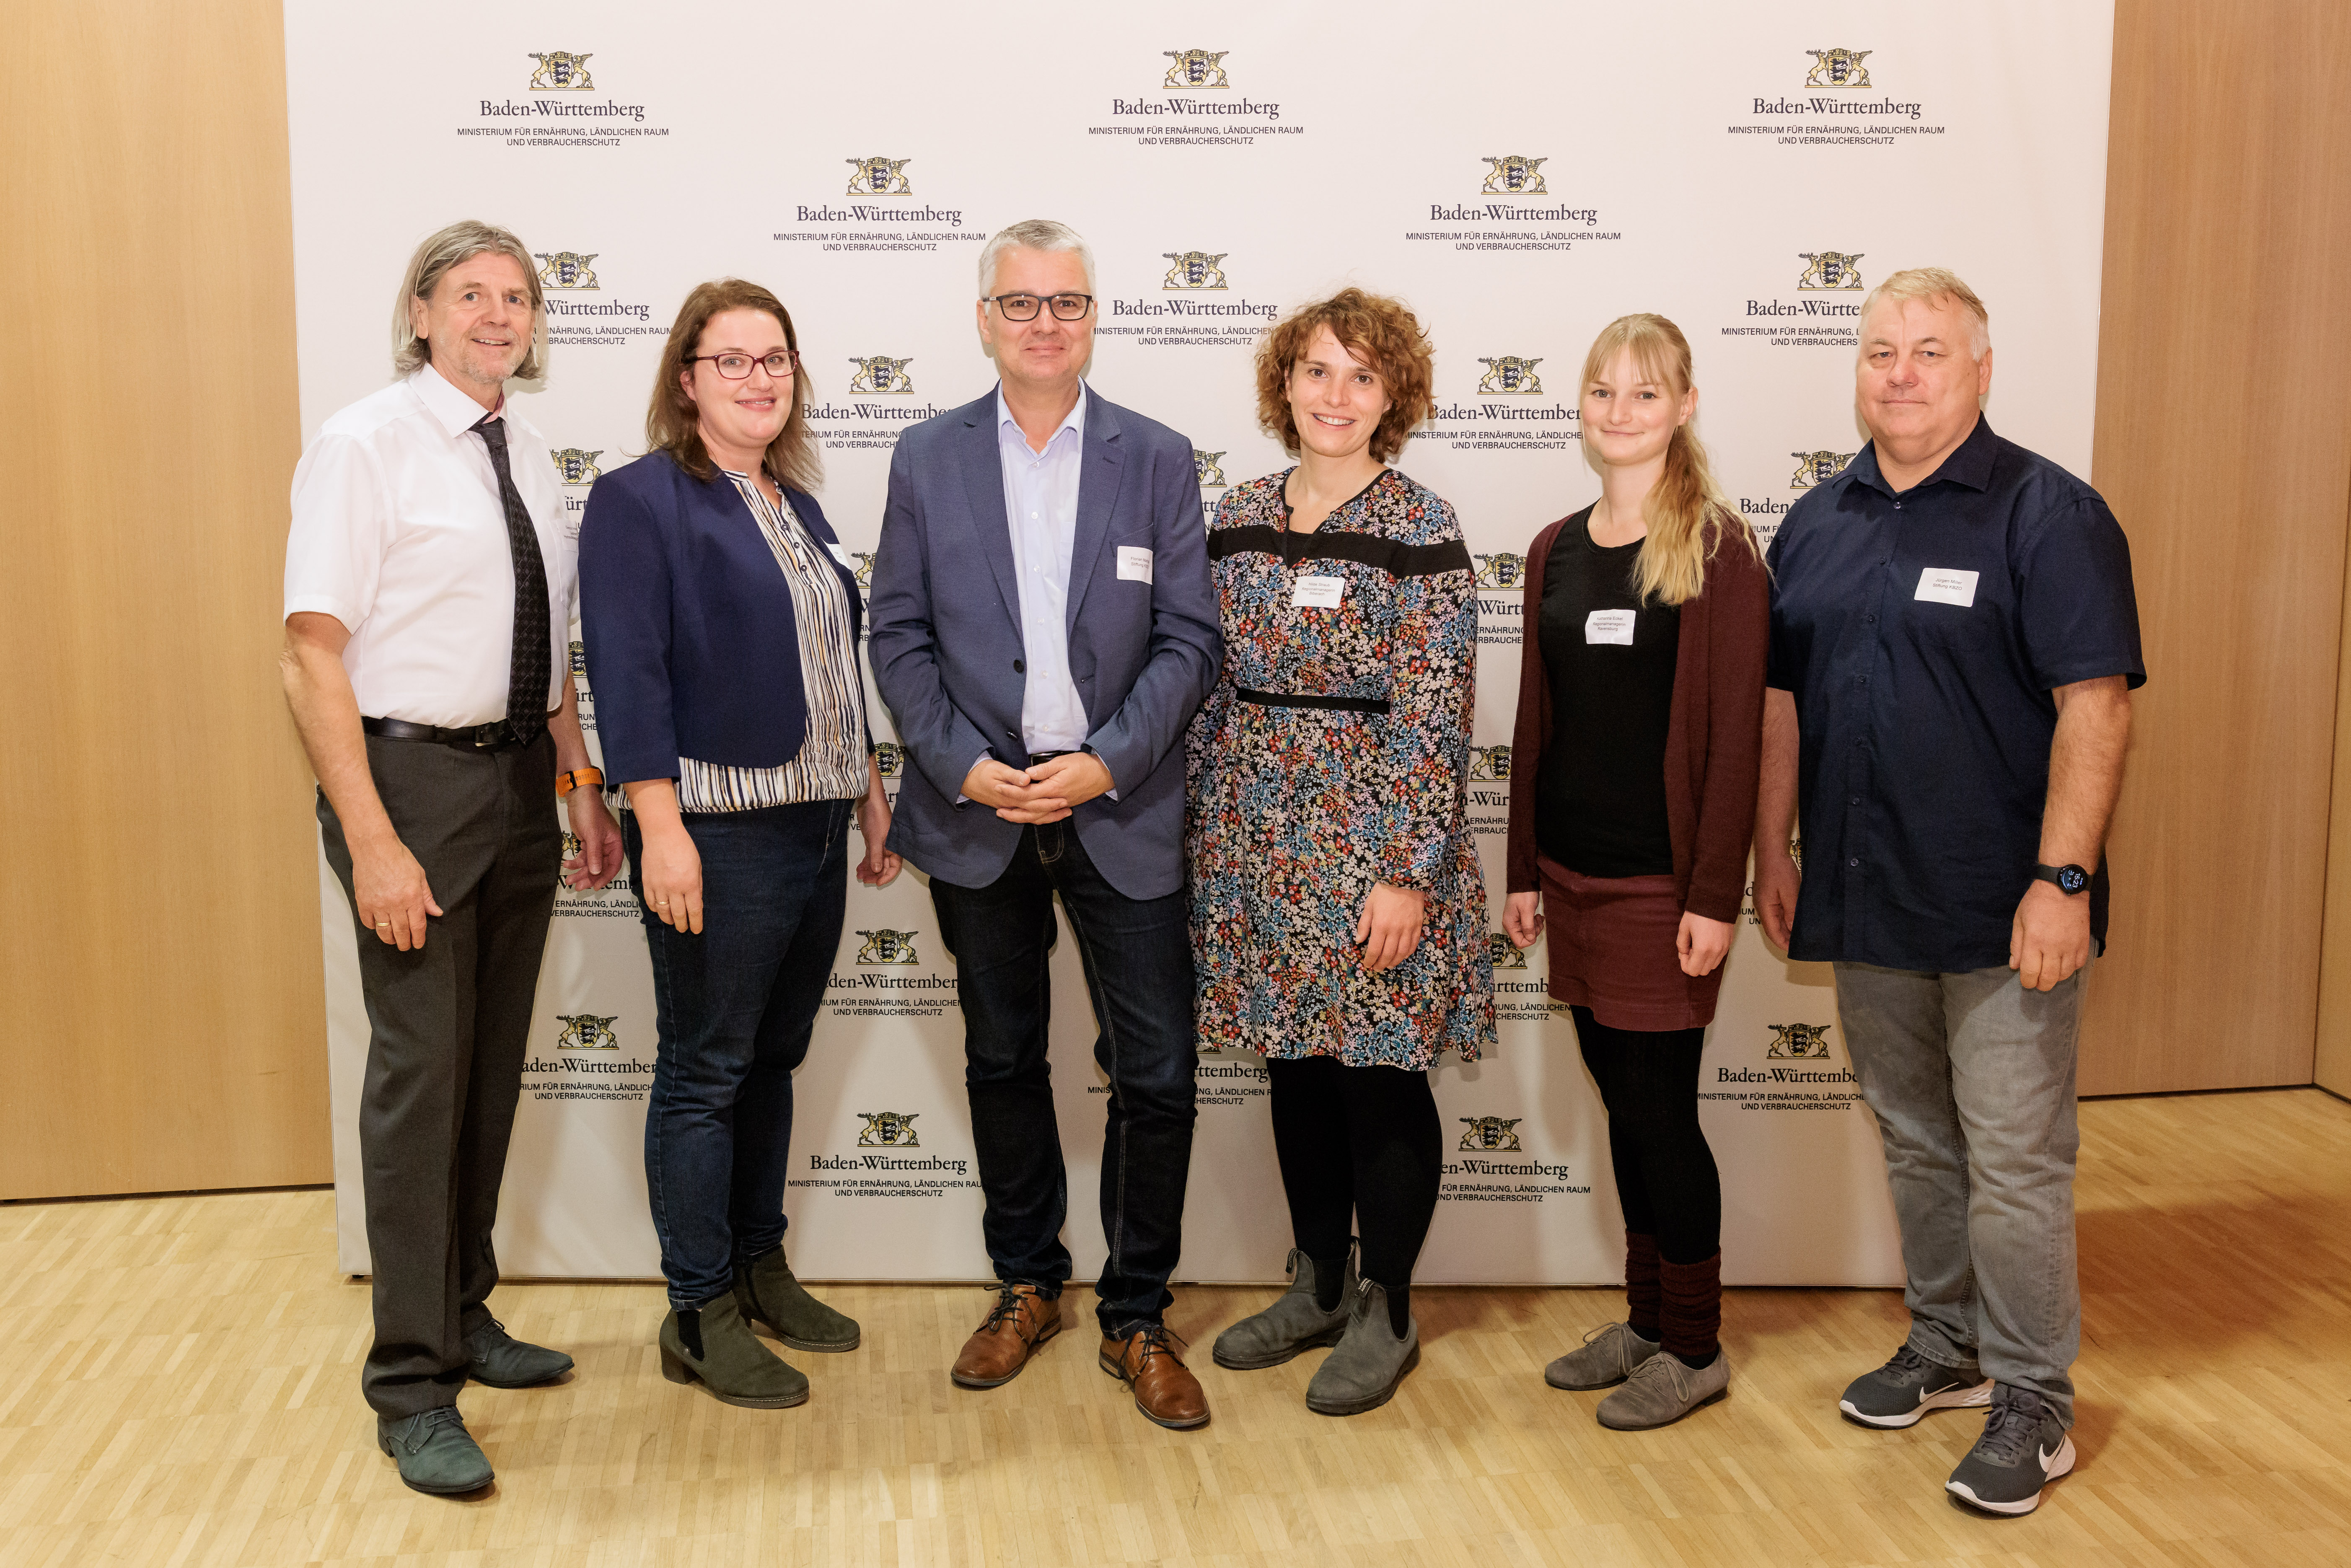 Die DGE-zertifizierten Küchenleitungen und Regionalmanagerinnen aus Biberach und Ravensburg